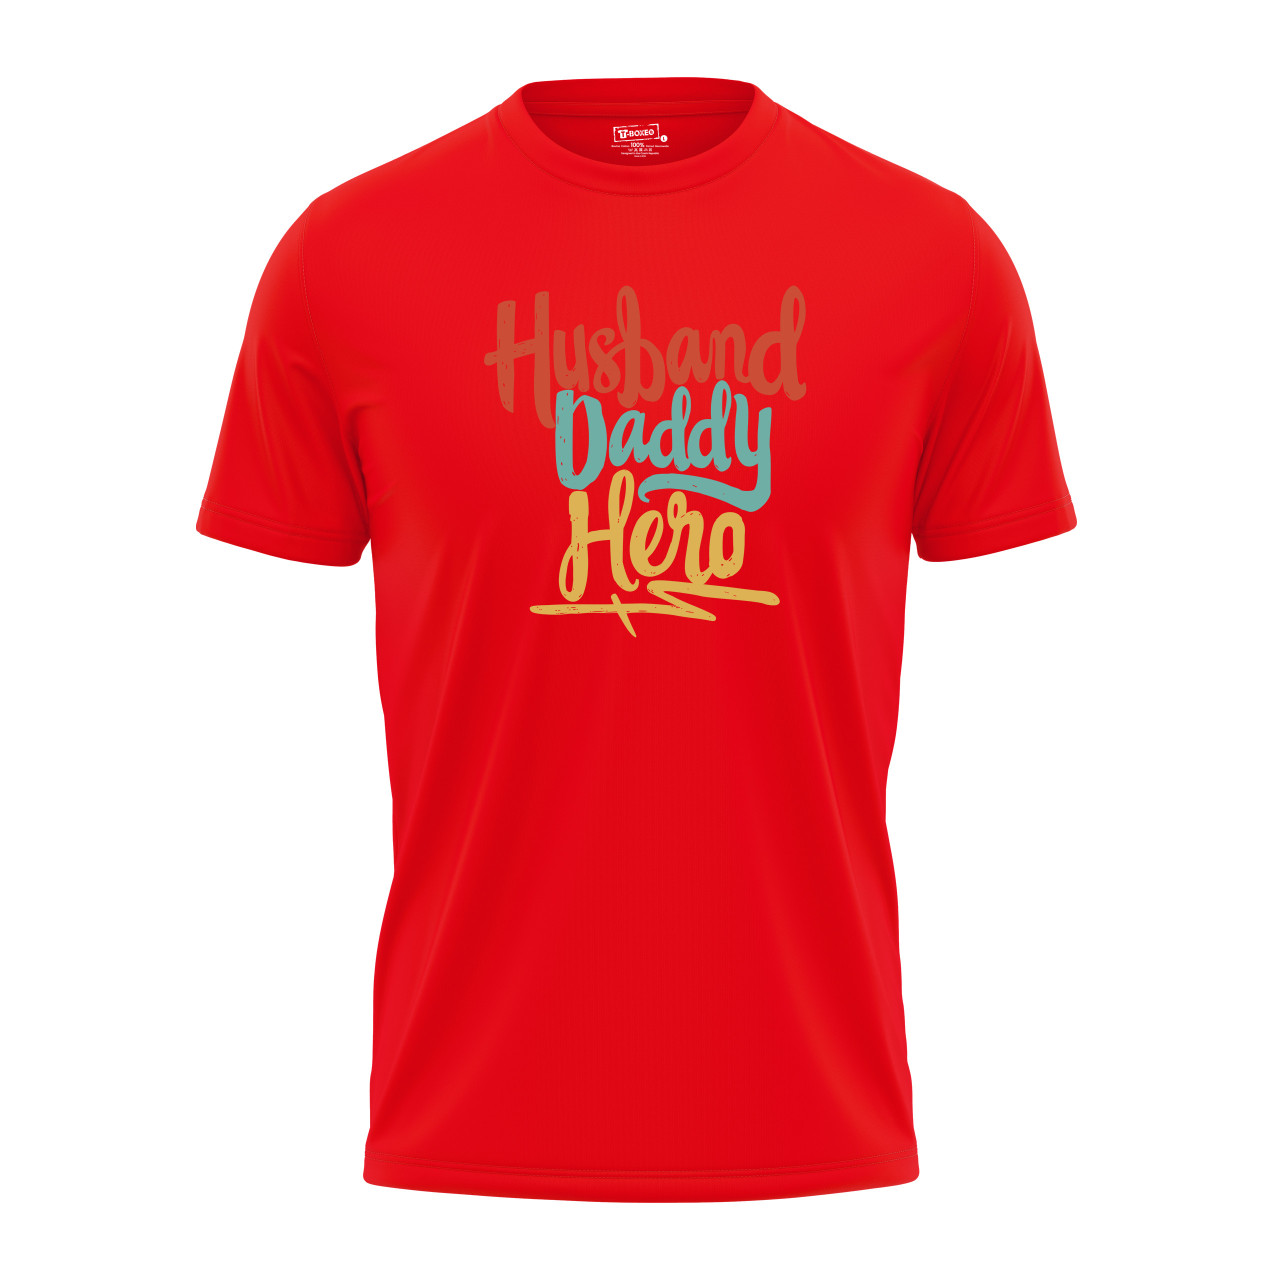 Pánské tričko s potiskem “Husband, Daddy, Hero”